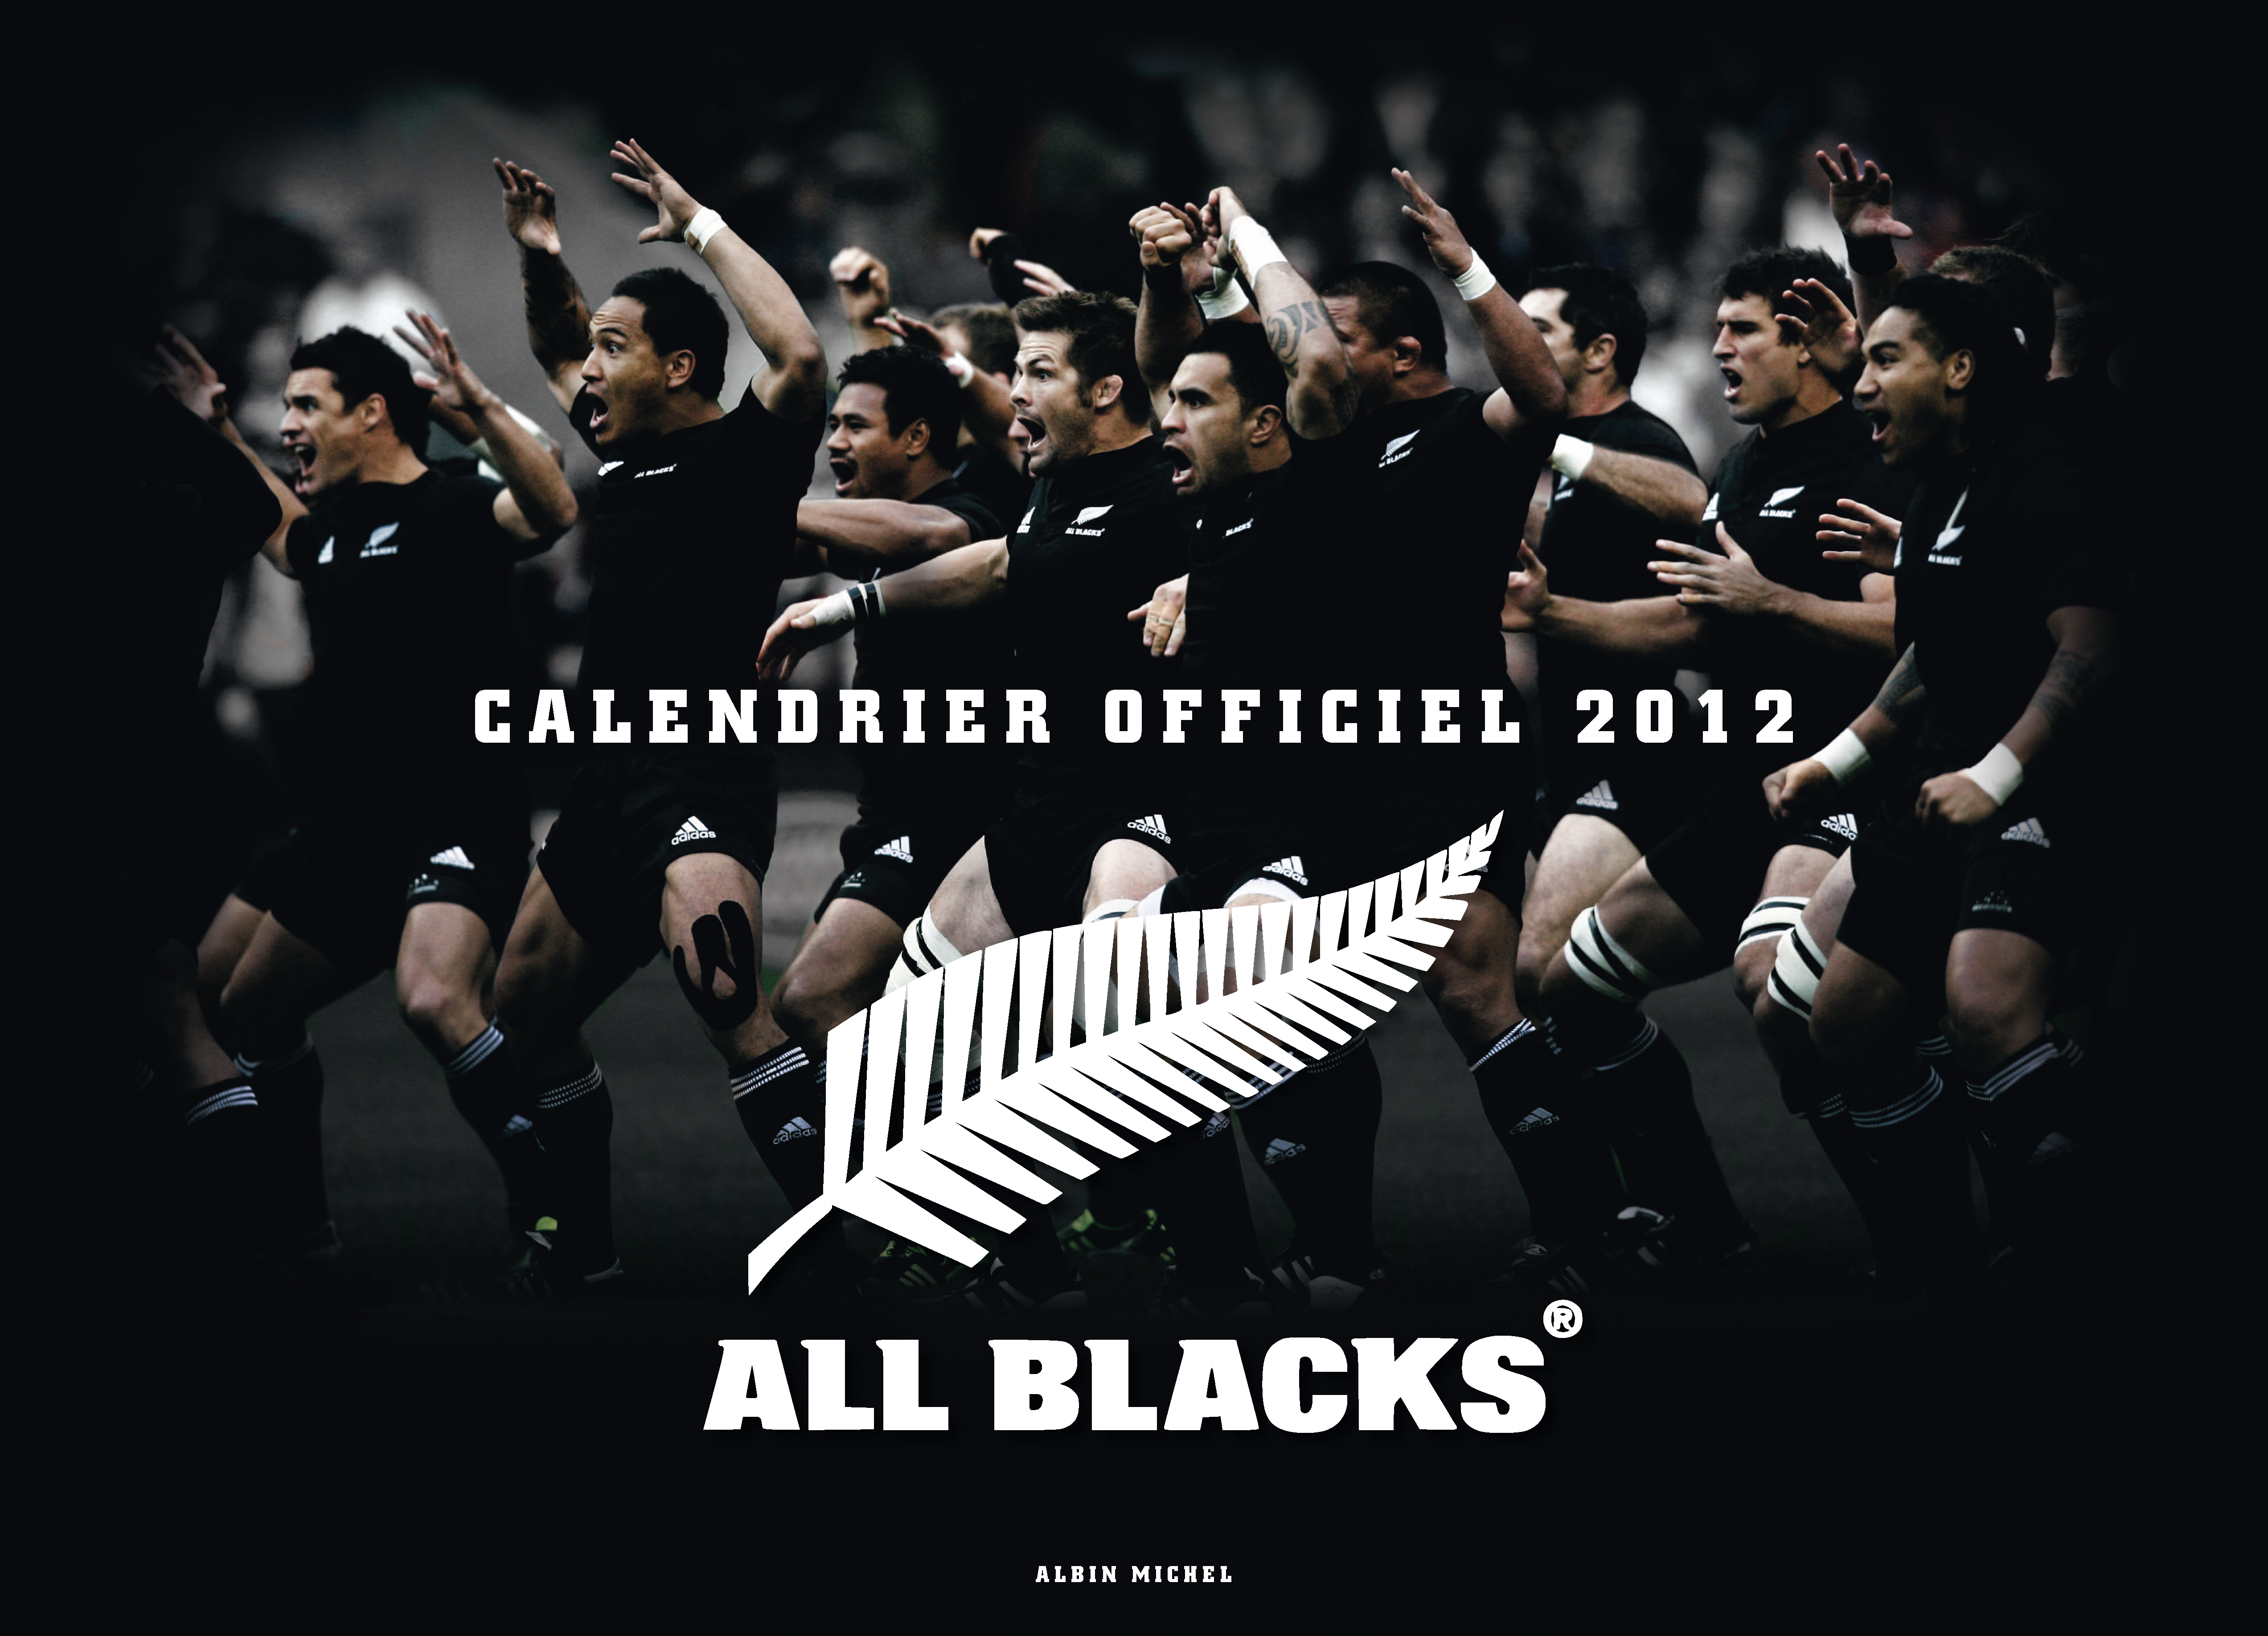 fond d'écran tout noir de rugby,police de caractère,texte,affiche,couverture de l'album,film